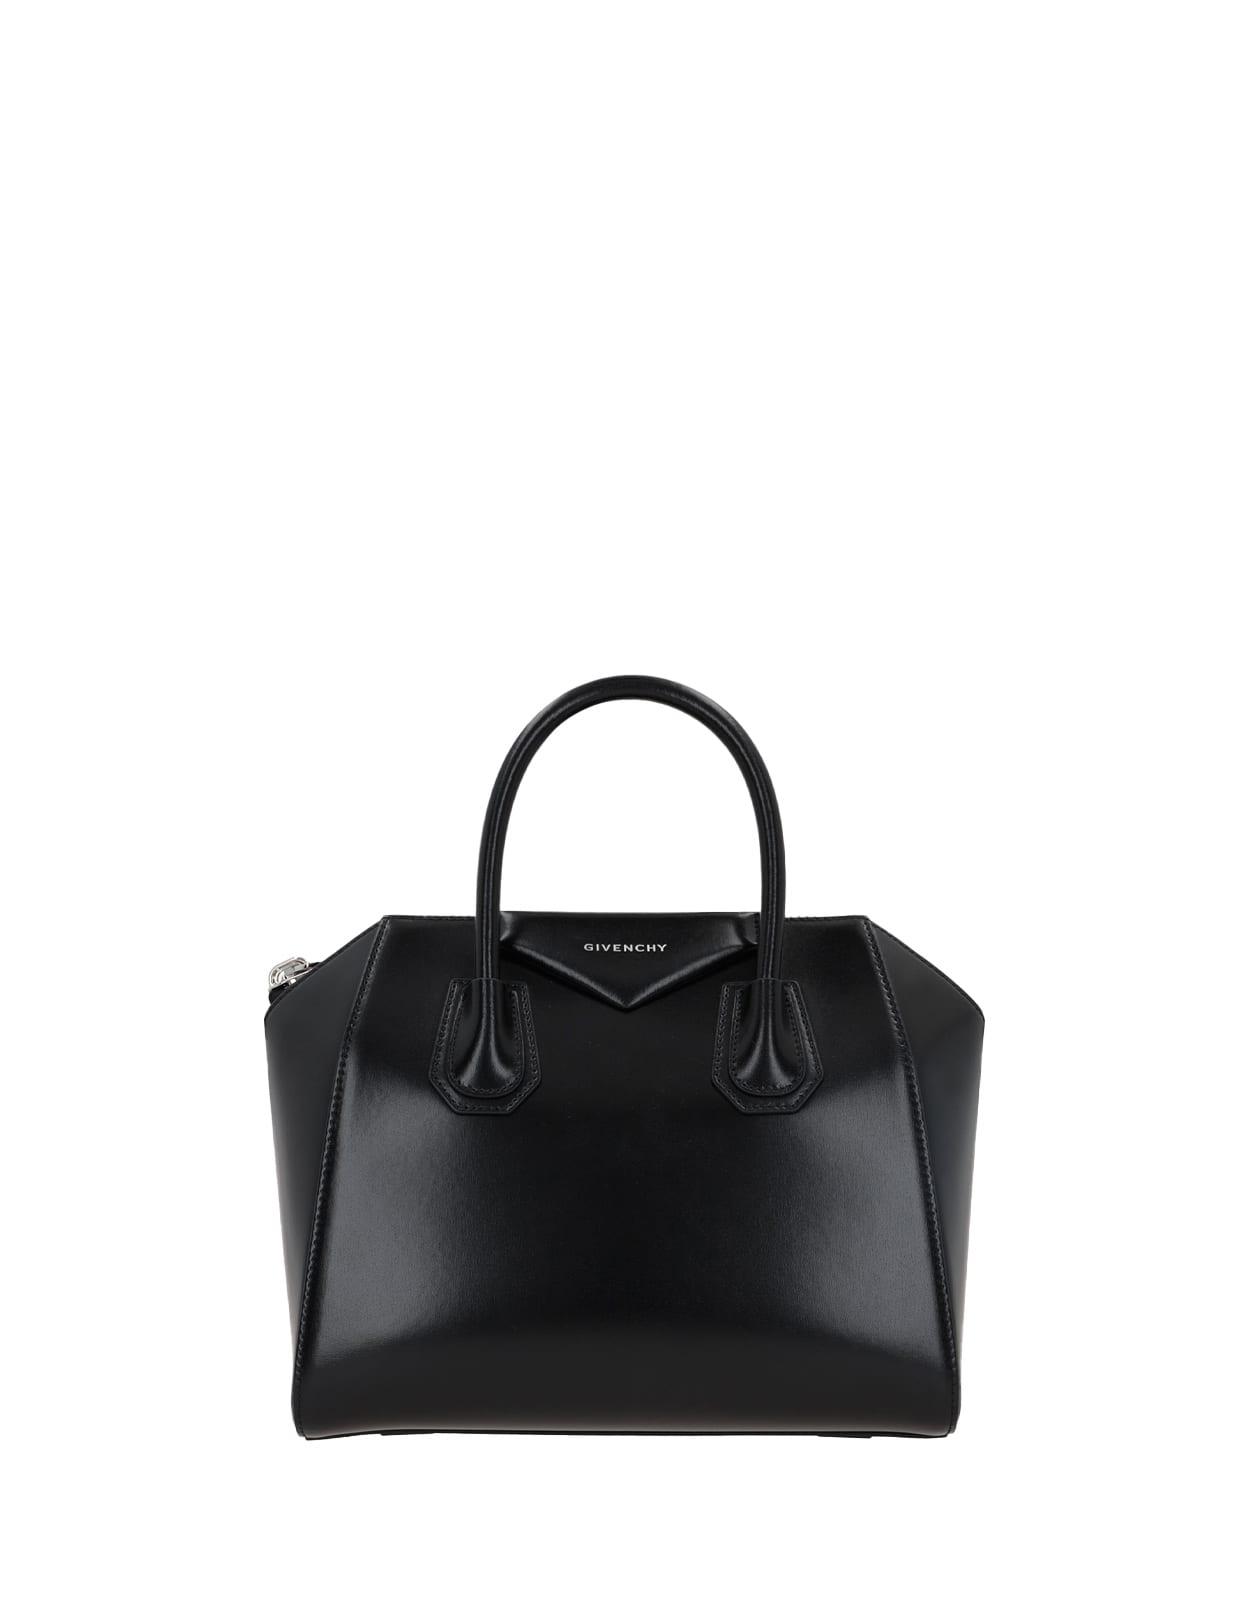 Givenchy Beige Grained Small Antigona Bag